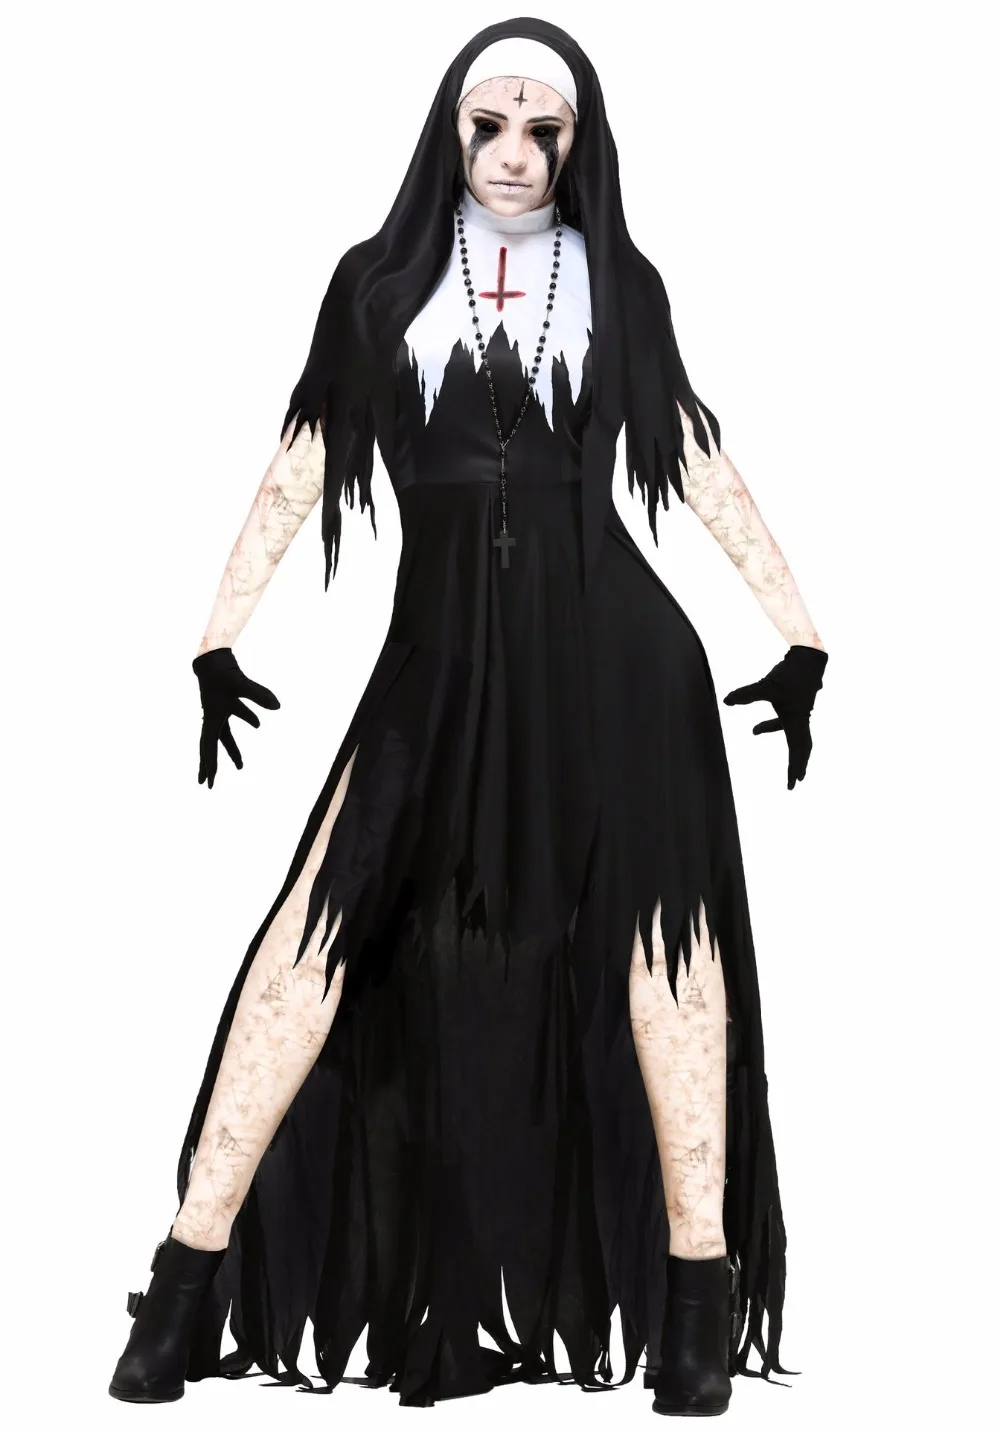 Сексуальный костюм монахини взрослых Для женщин Косплэй с Чулки для женщин черный балахон для Хэллоуина сестра Косплэй партия Вампир Демон костюм